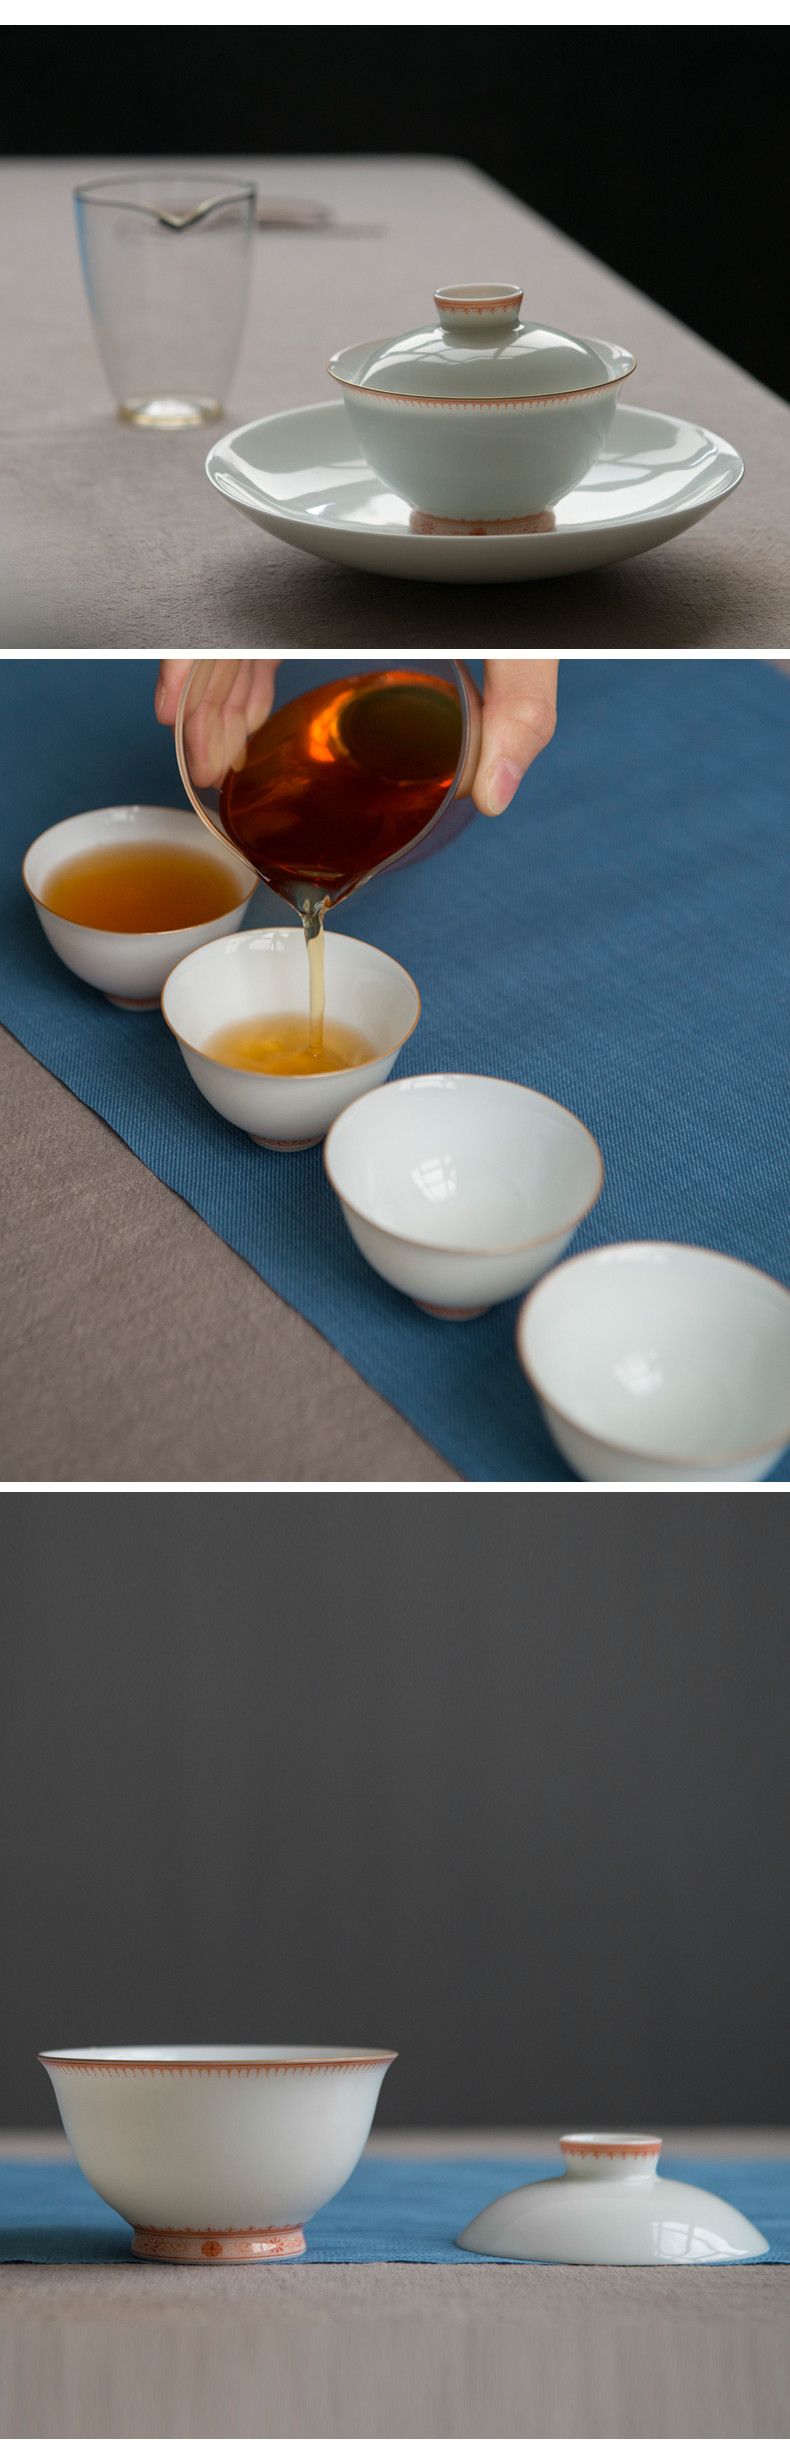 景德鎮手繪陶瓷茶具套裝家用青花瓷手繪功夫茶具白瓷茶具 紅釉邊角